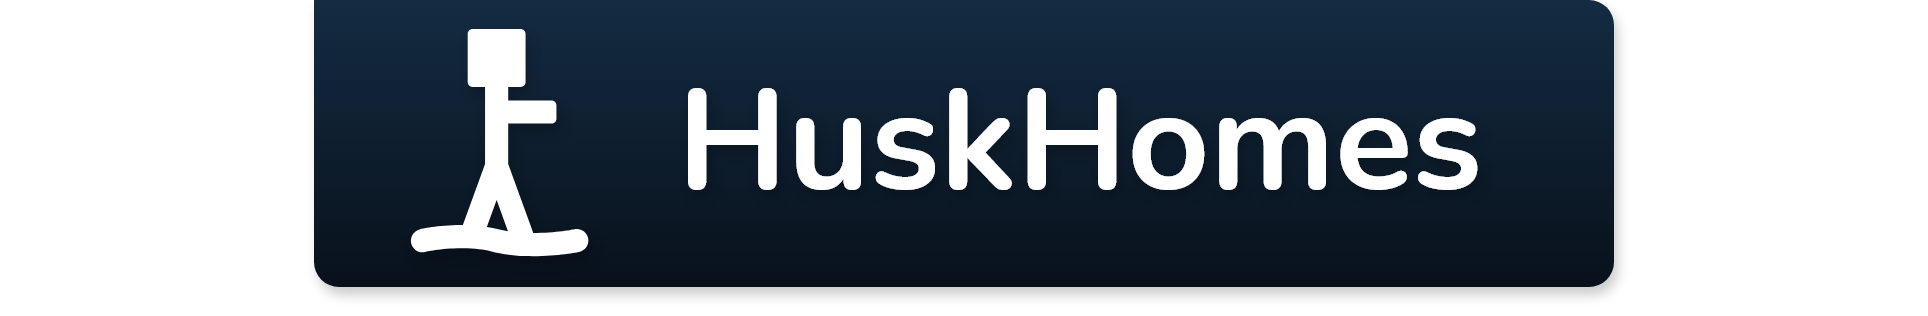 HuskHomes banner